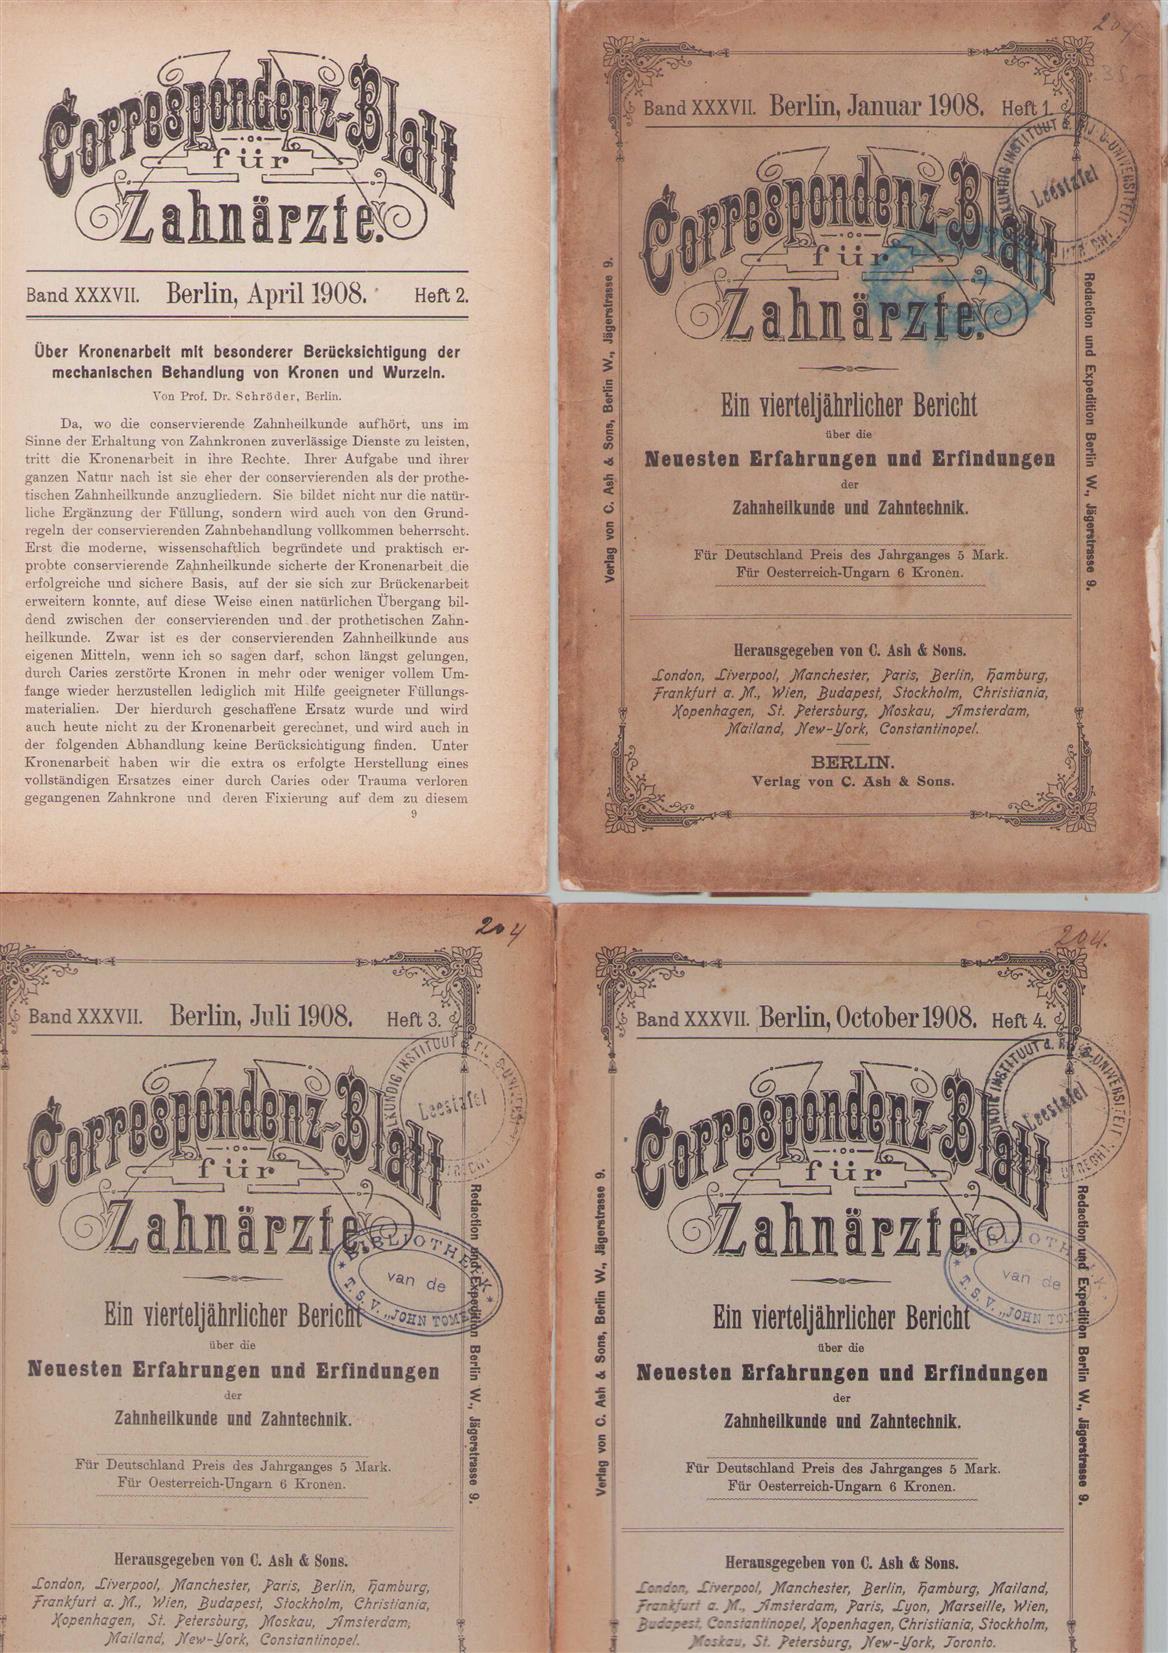 UNKNOWN AUTHOR - CORRESPONDENZ-BLATT FUR ZAHNARZTE, 1908,: ein vierteljahrlicher bericht uber die neuesten... erfahrungen und erfindungen der zahnheilkunde und.Zahntecnik